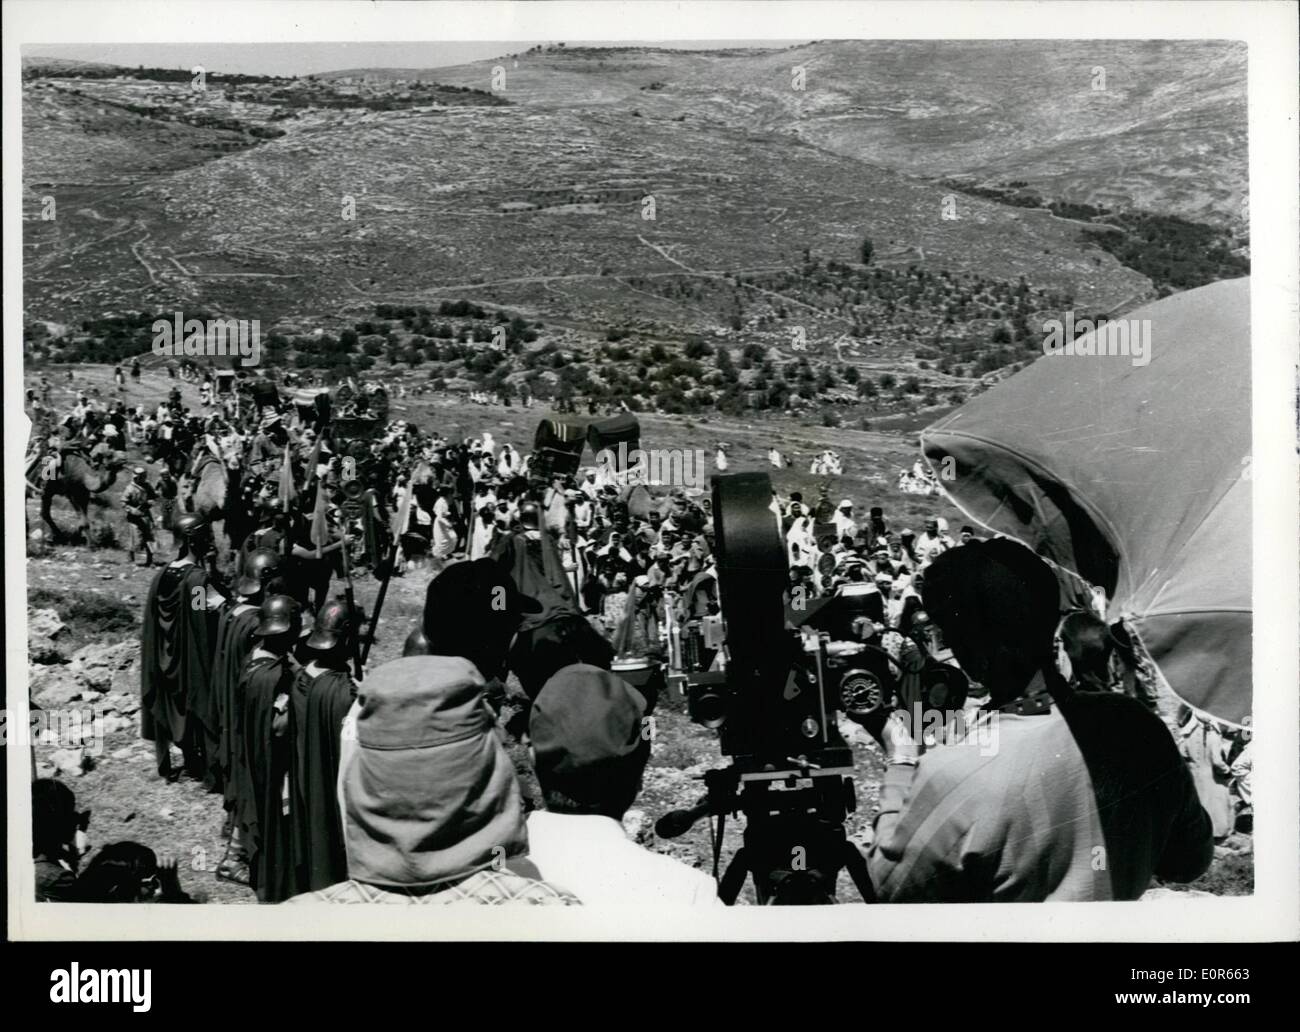 Apr. 04, 1958 - il famoso film nel corso del Re-Make: Riprese ''Ben Hur'' in Gerusalemme. La scena durante la ri-filmare con la Metro Goldwyn Mayer della famosa epopea schermata 'Ben Hur' - nel suo ambiente naturale di Gerusalemme. Foto Stock